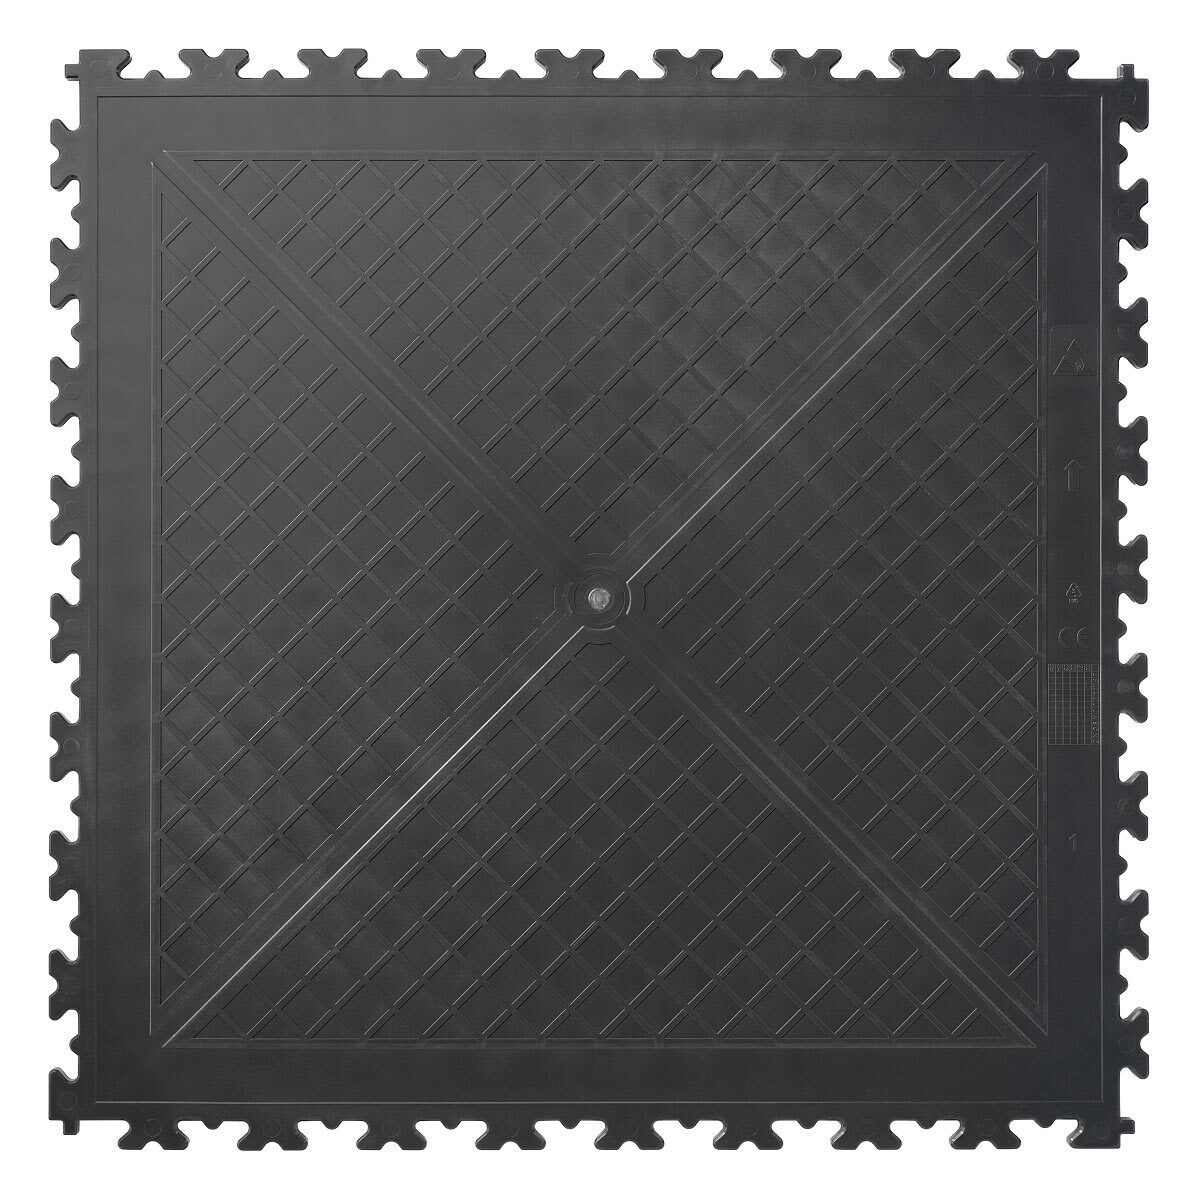 Klikflor X500 Garage Floor Tiles in Graphite (496 x 496 x 7mm) - 4 Pack